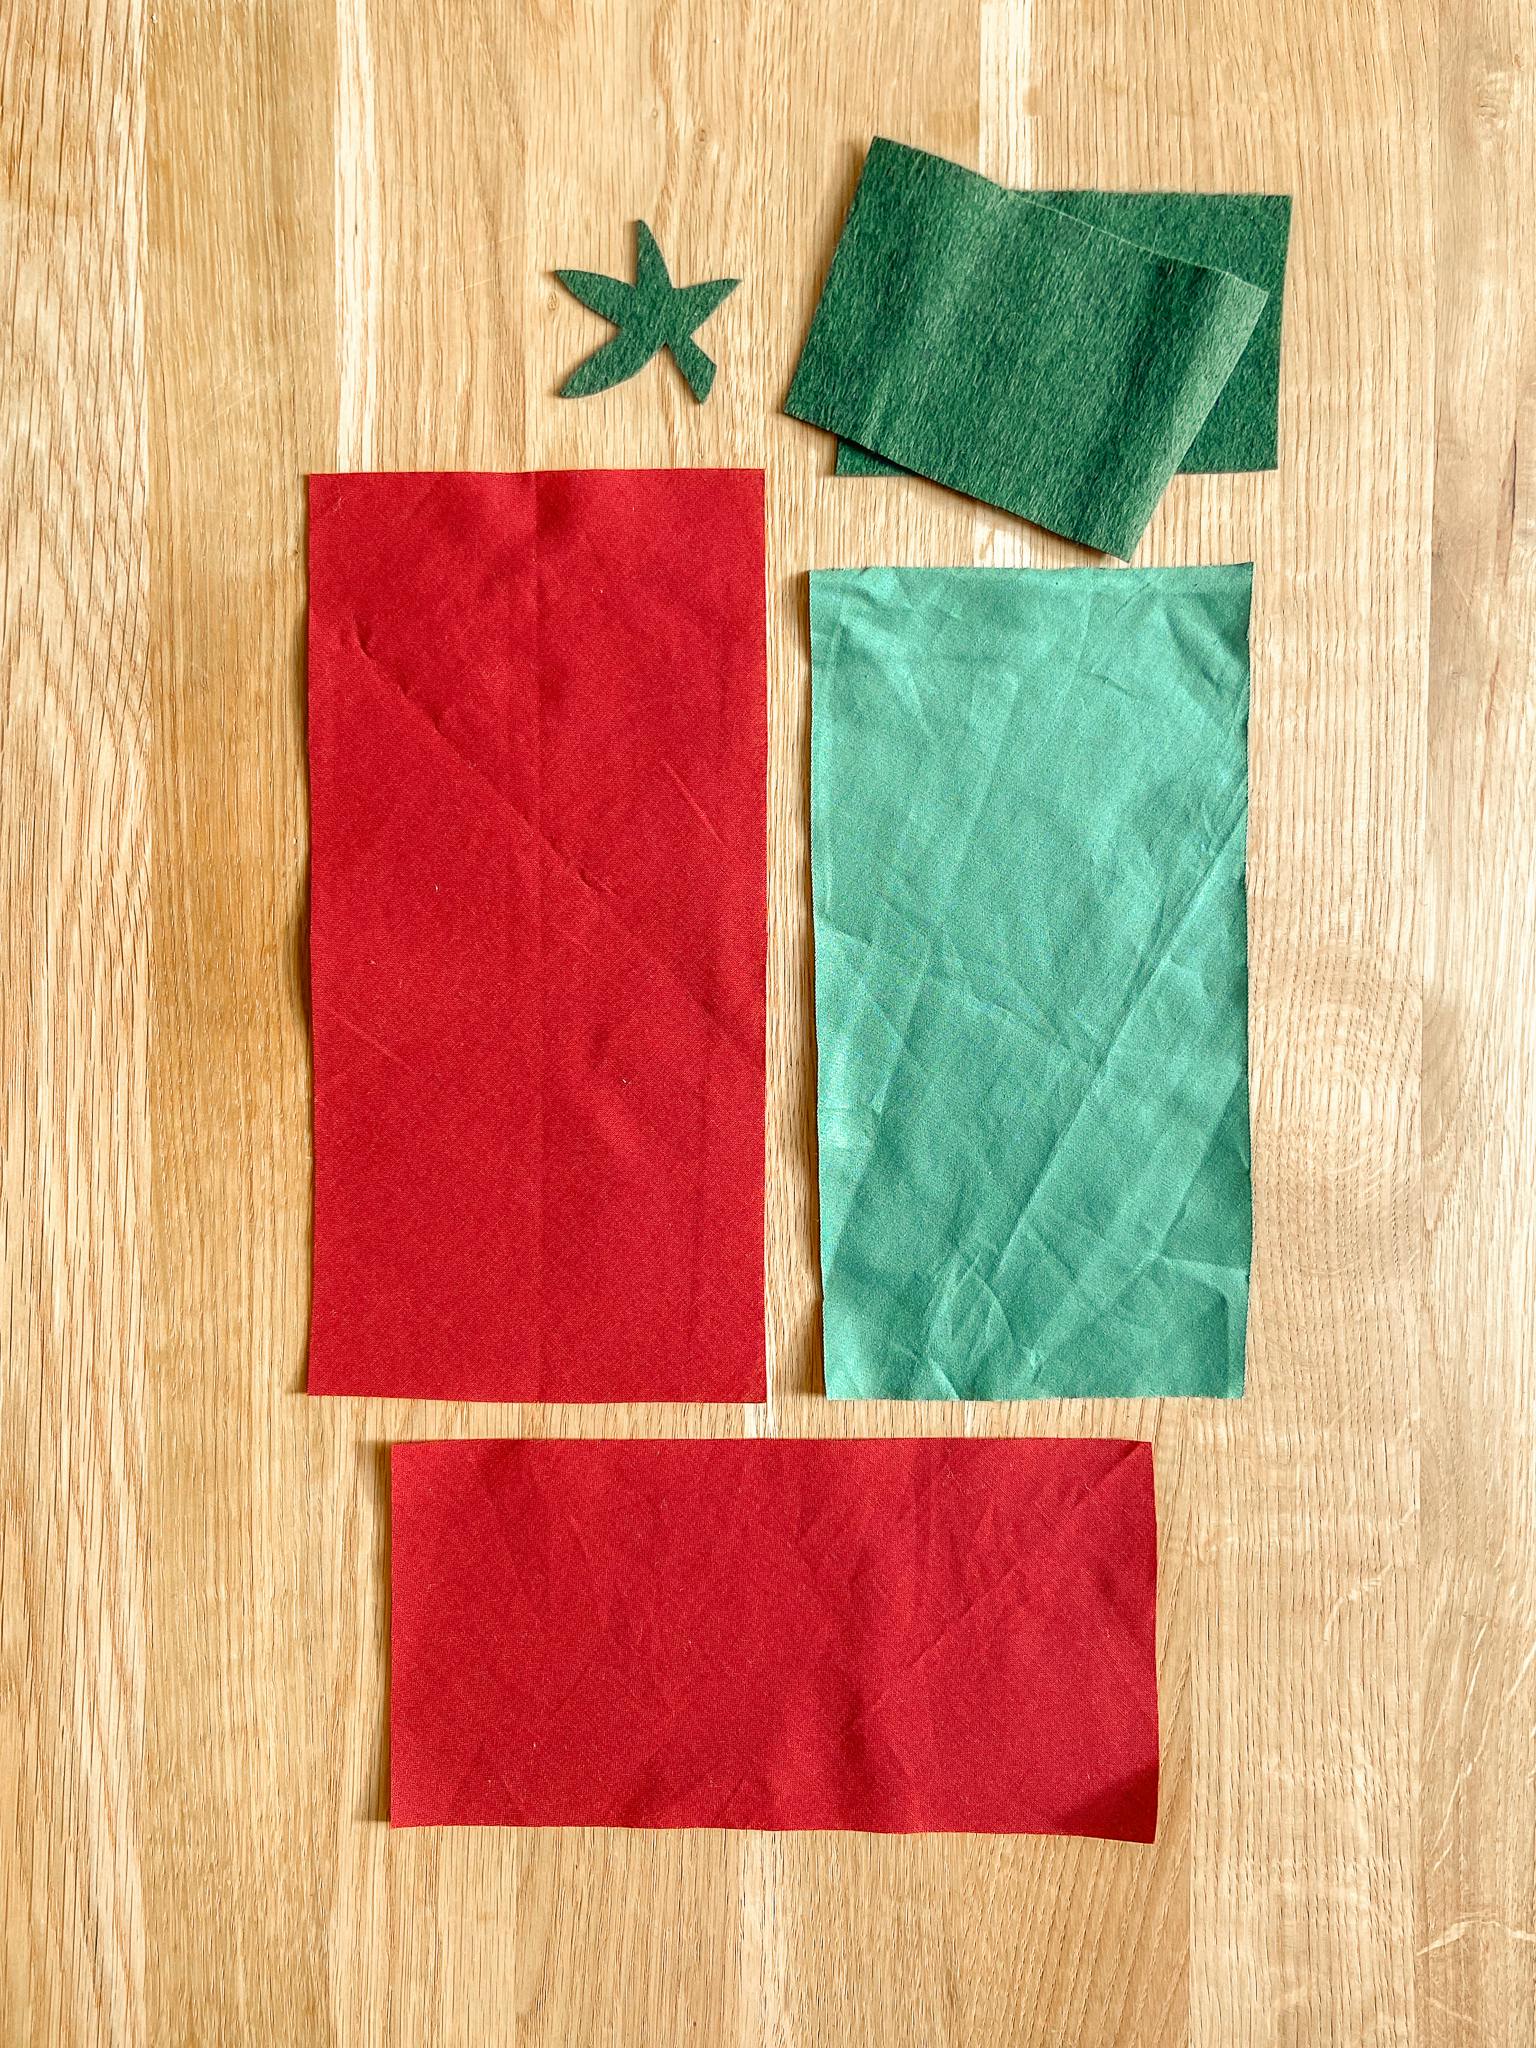  Rectángulos de tela de color verde y rojo para hacer tomates de tela